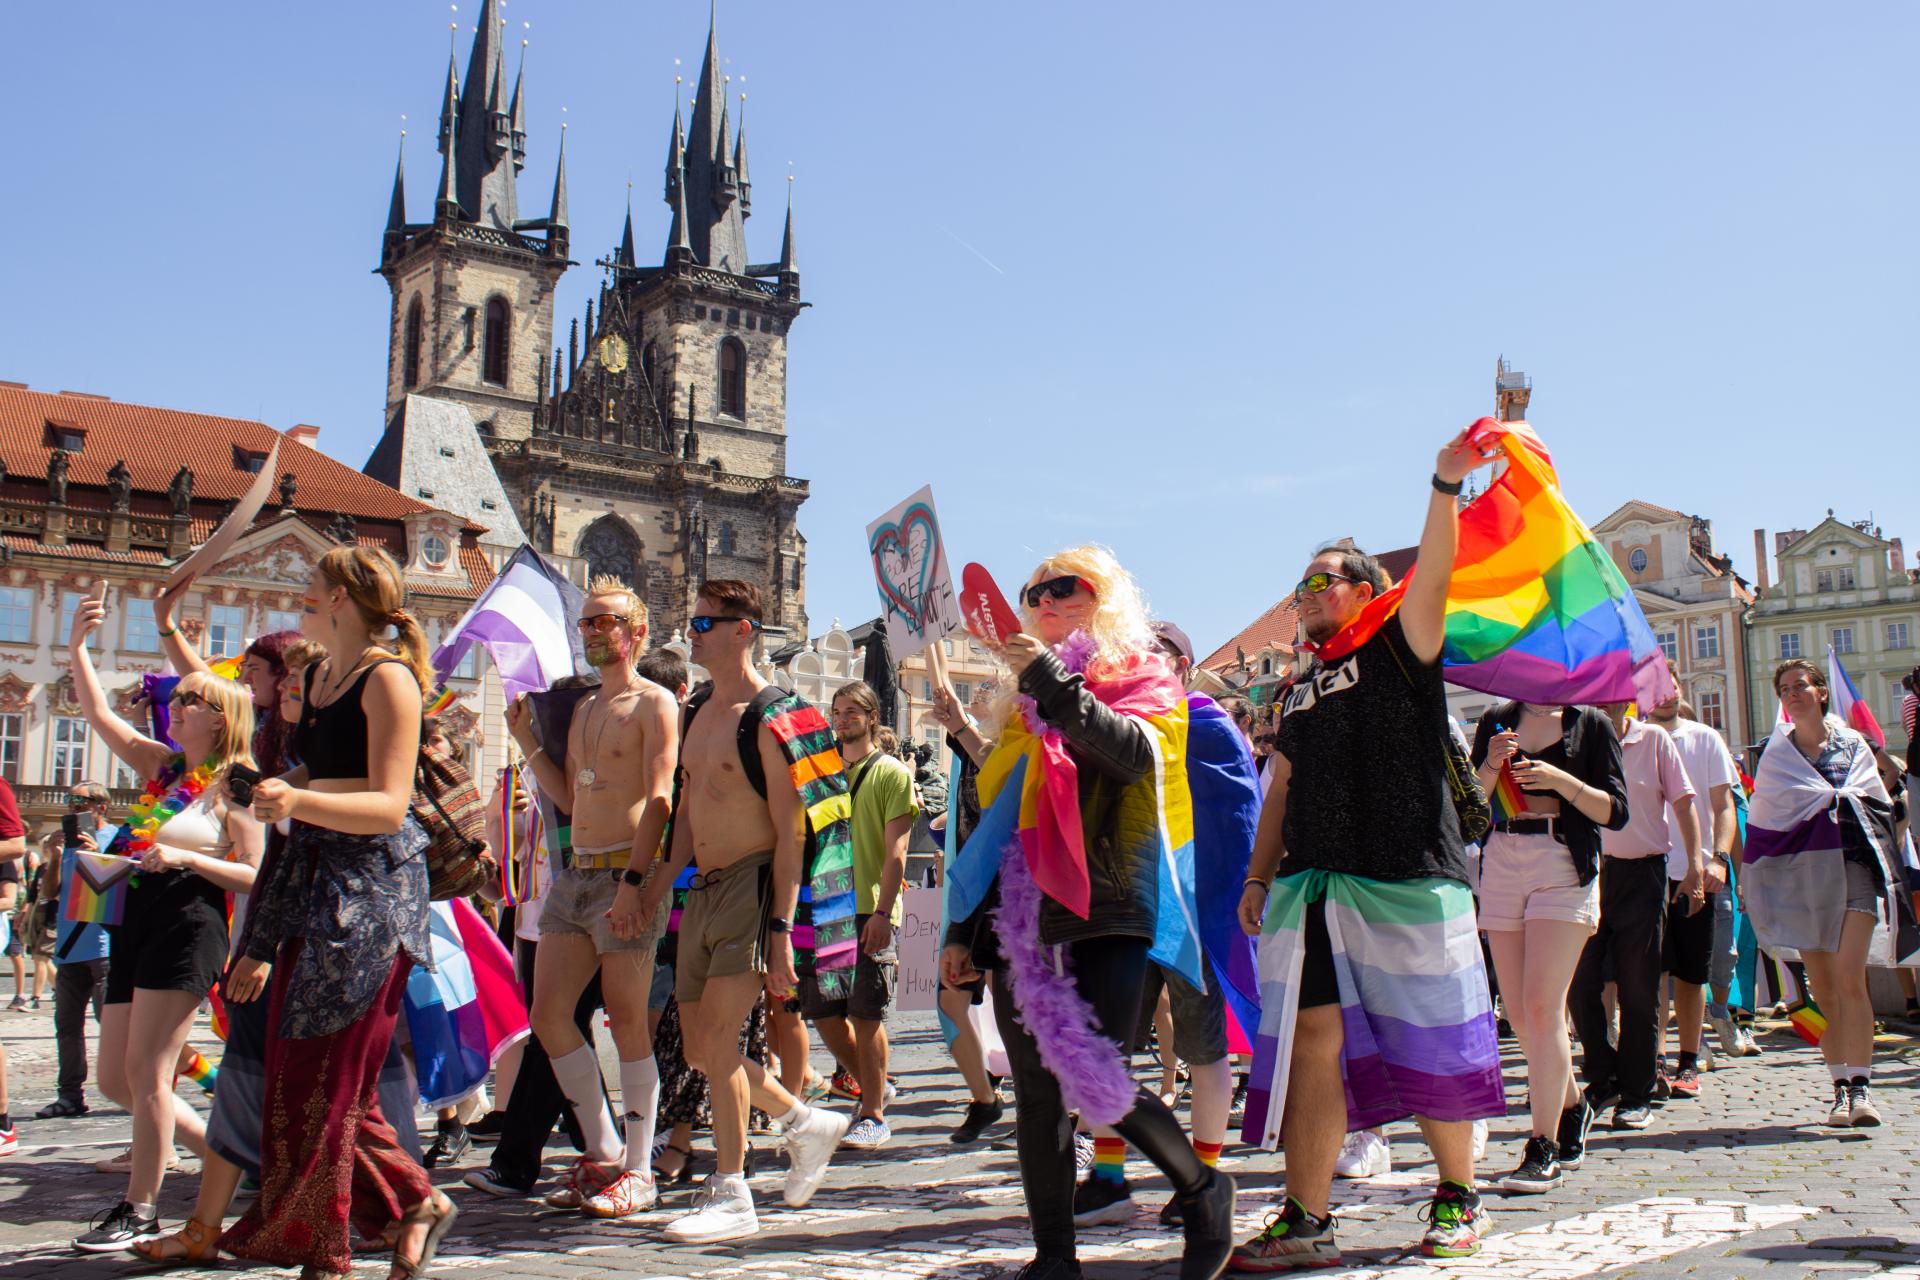 Desaťtisíce ľudí prešli Prahou na podporu LGBT+ menšiny, témou boli tradície